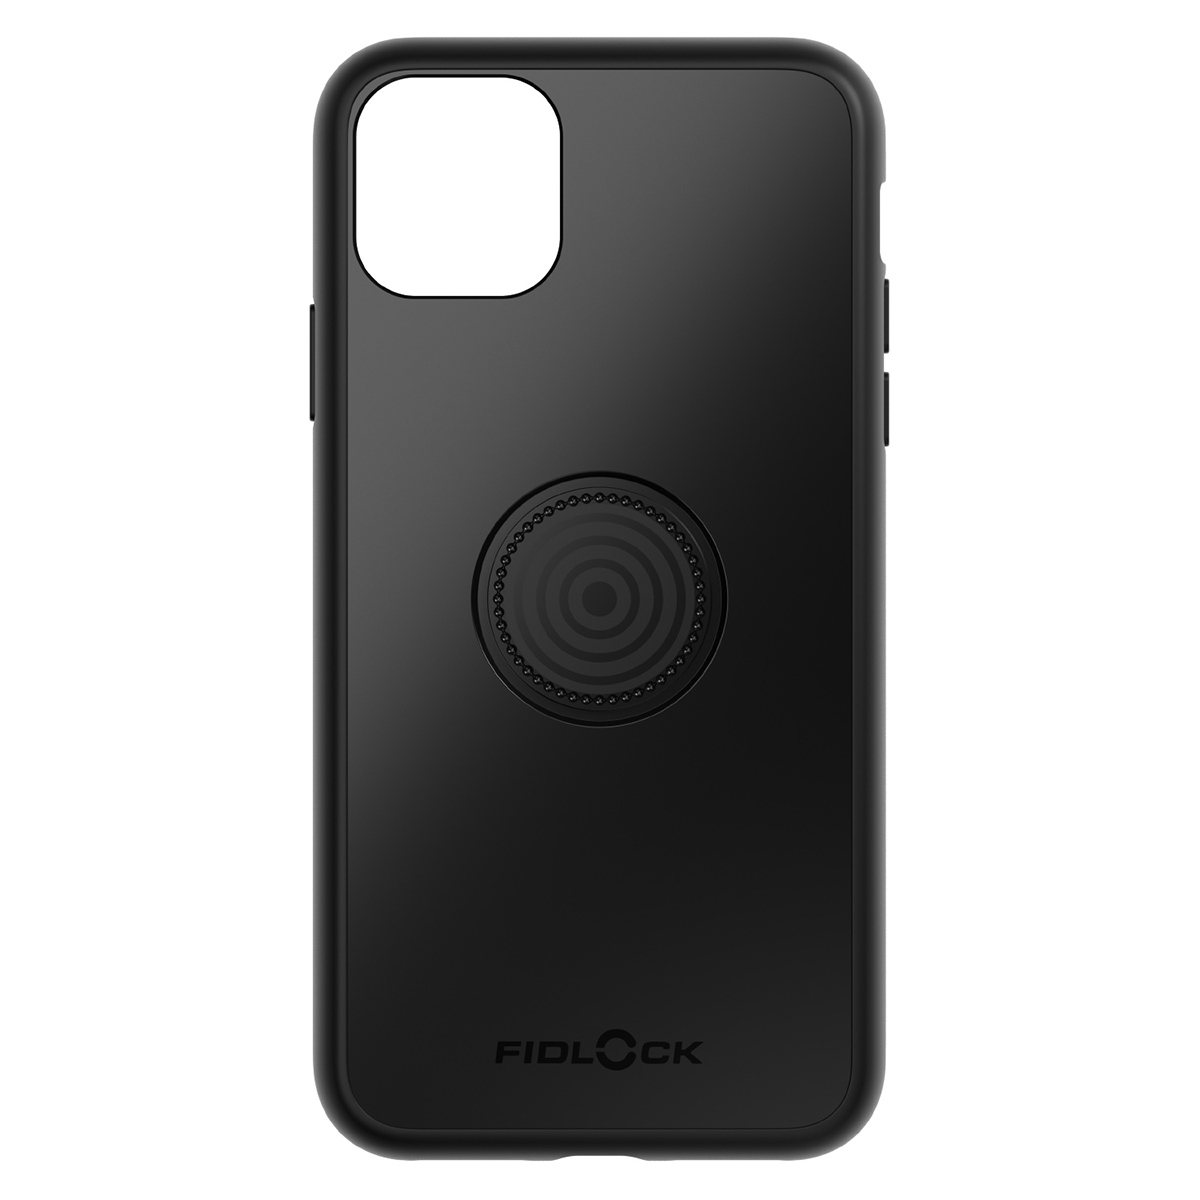 Fidlock VACUUM Phone Case iPhone 11 Pro Max